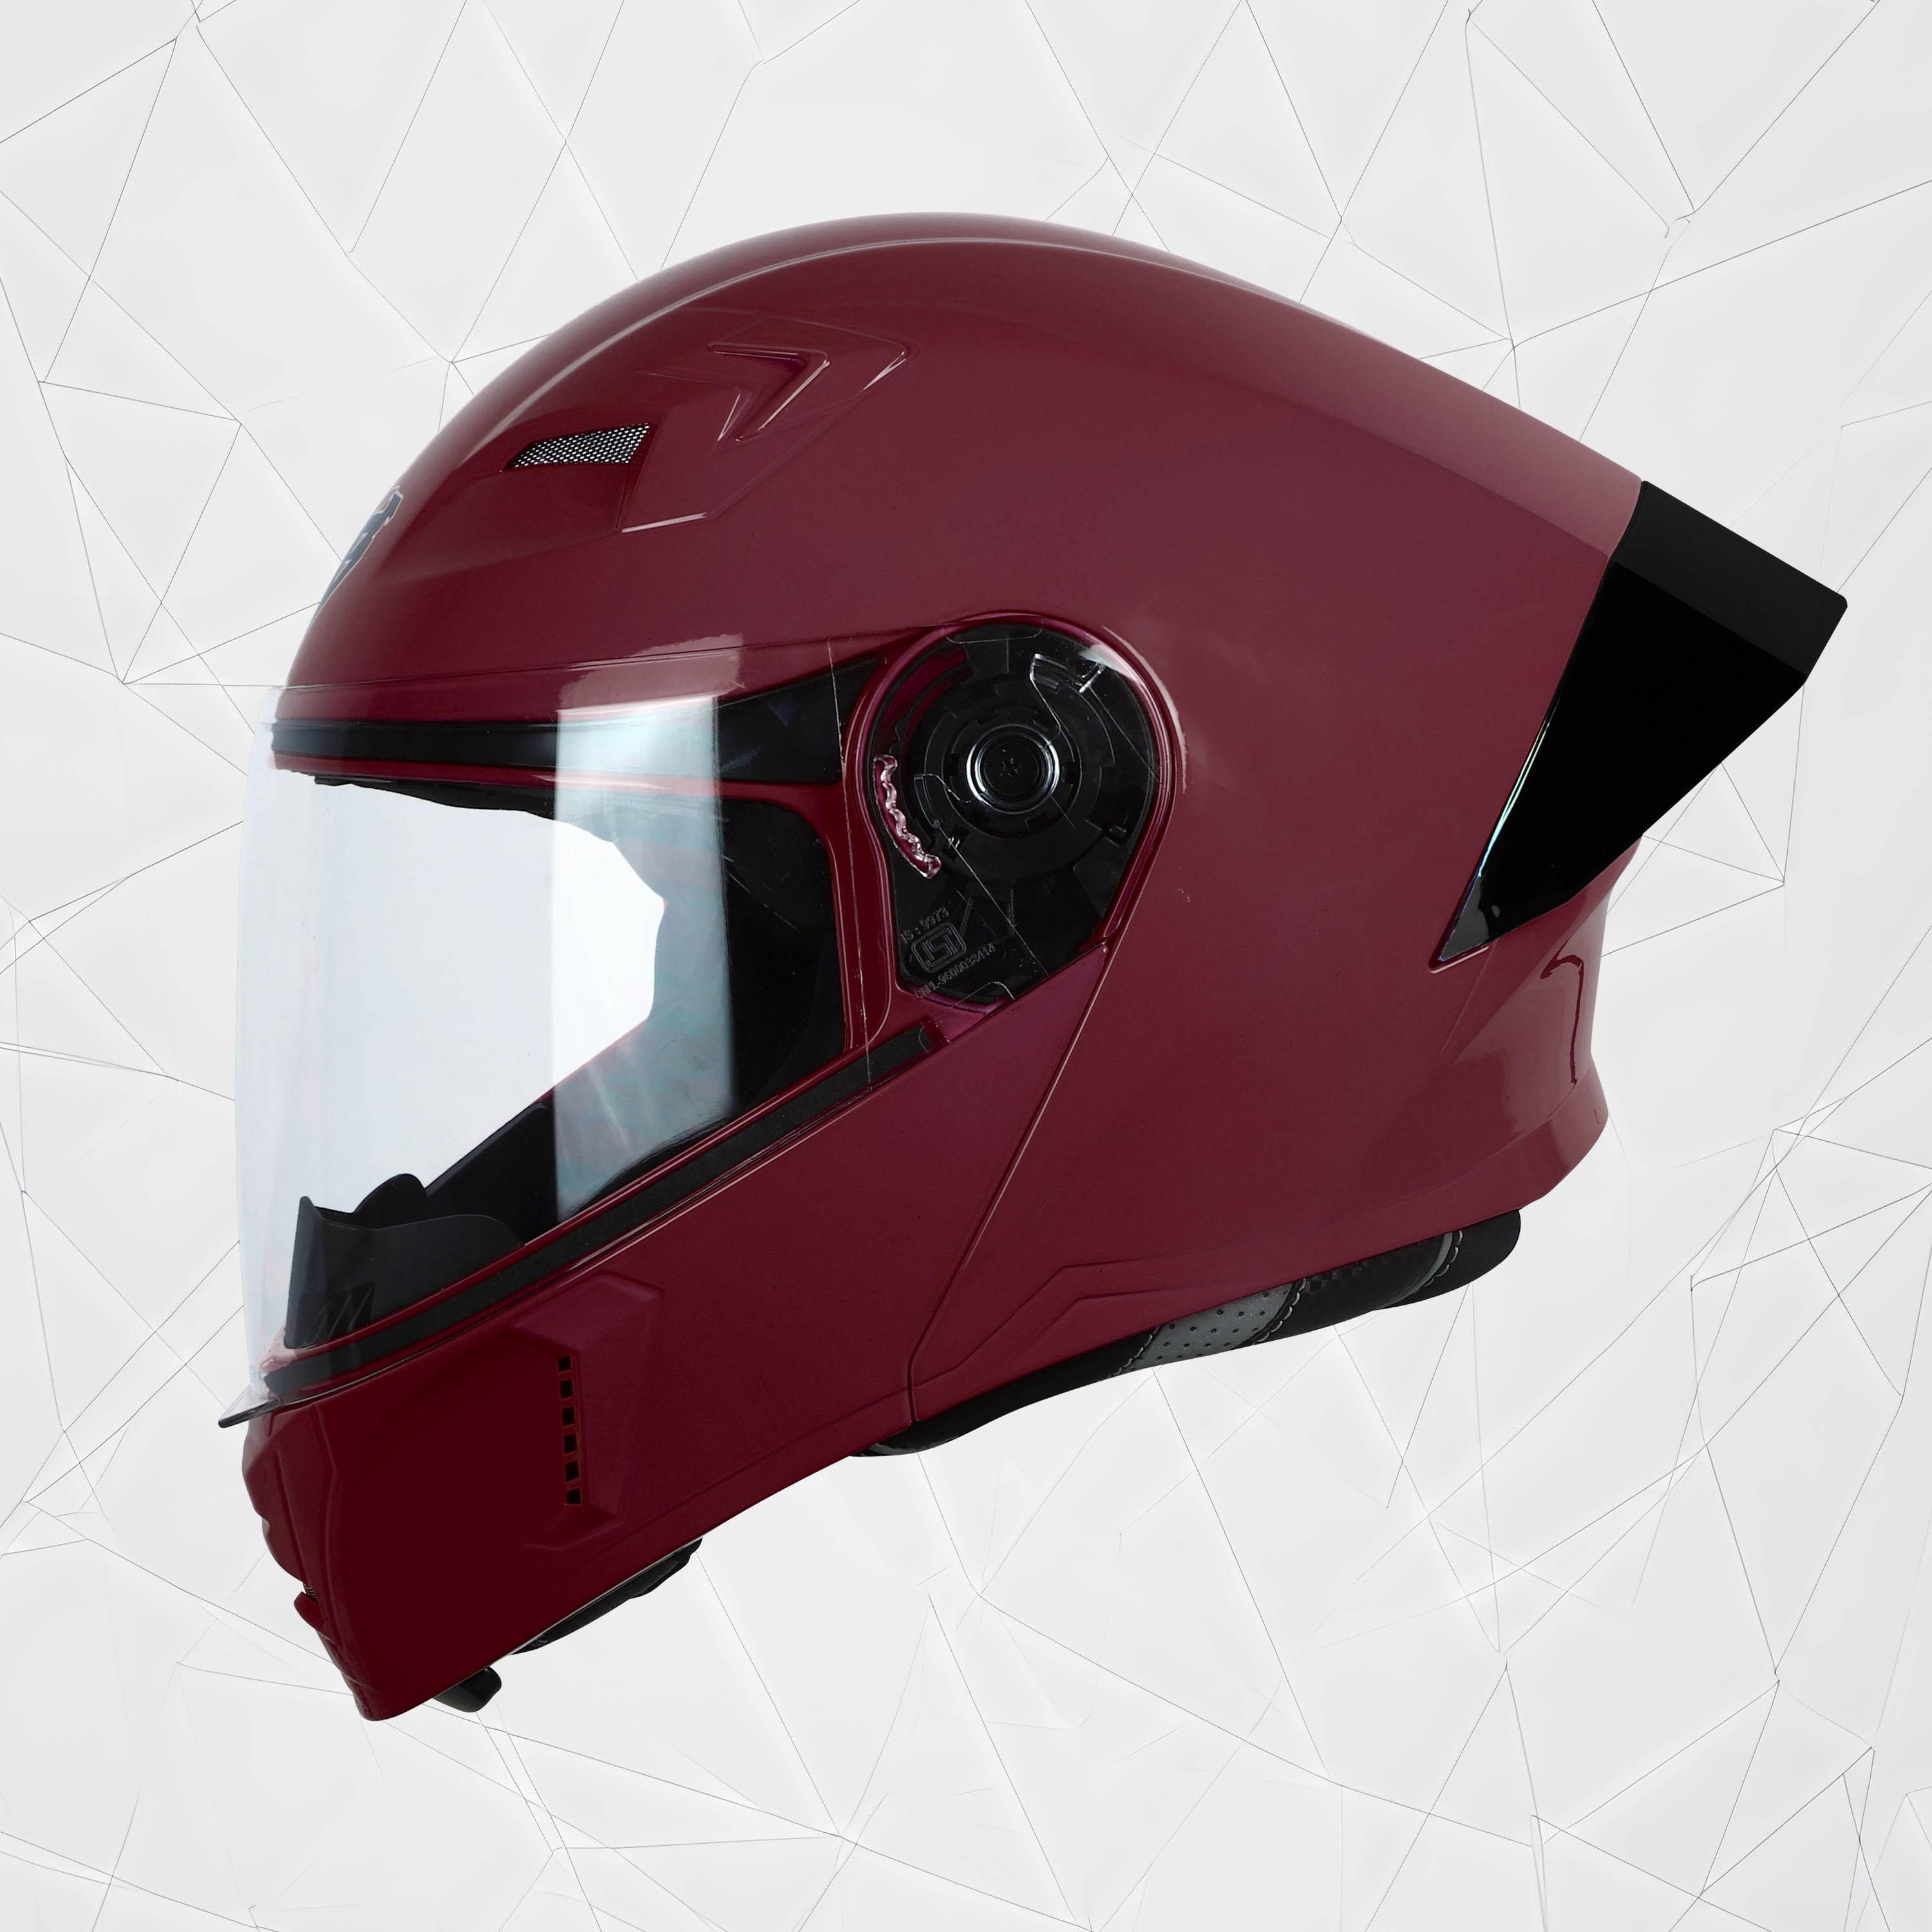 Steelbird SBA-20 7Wings ISI Certified Flip-Up Helmet With Black Spoiler For Men And Women (Matt Maroon With Clear Visor)